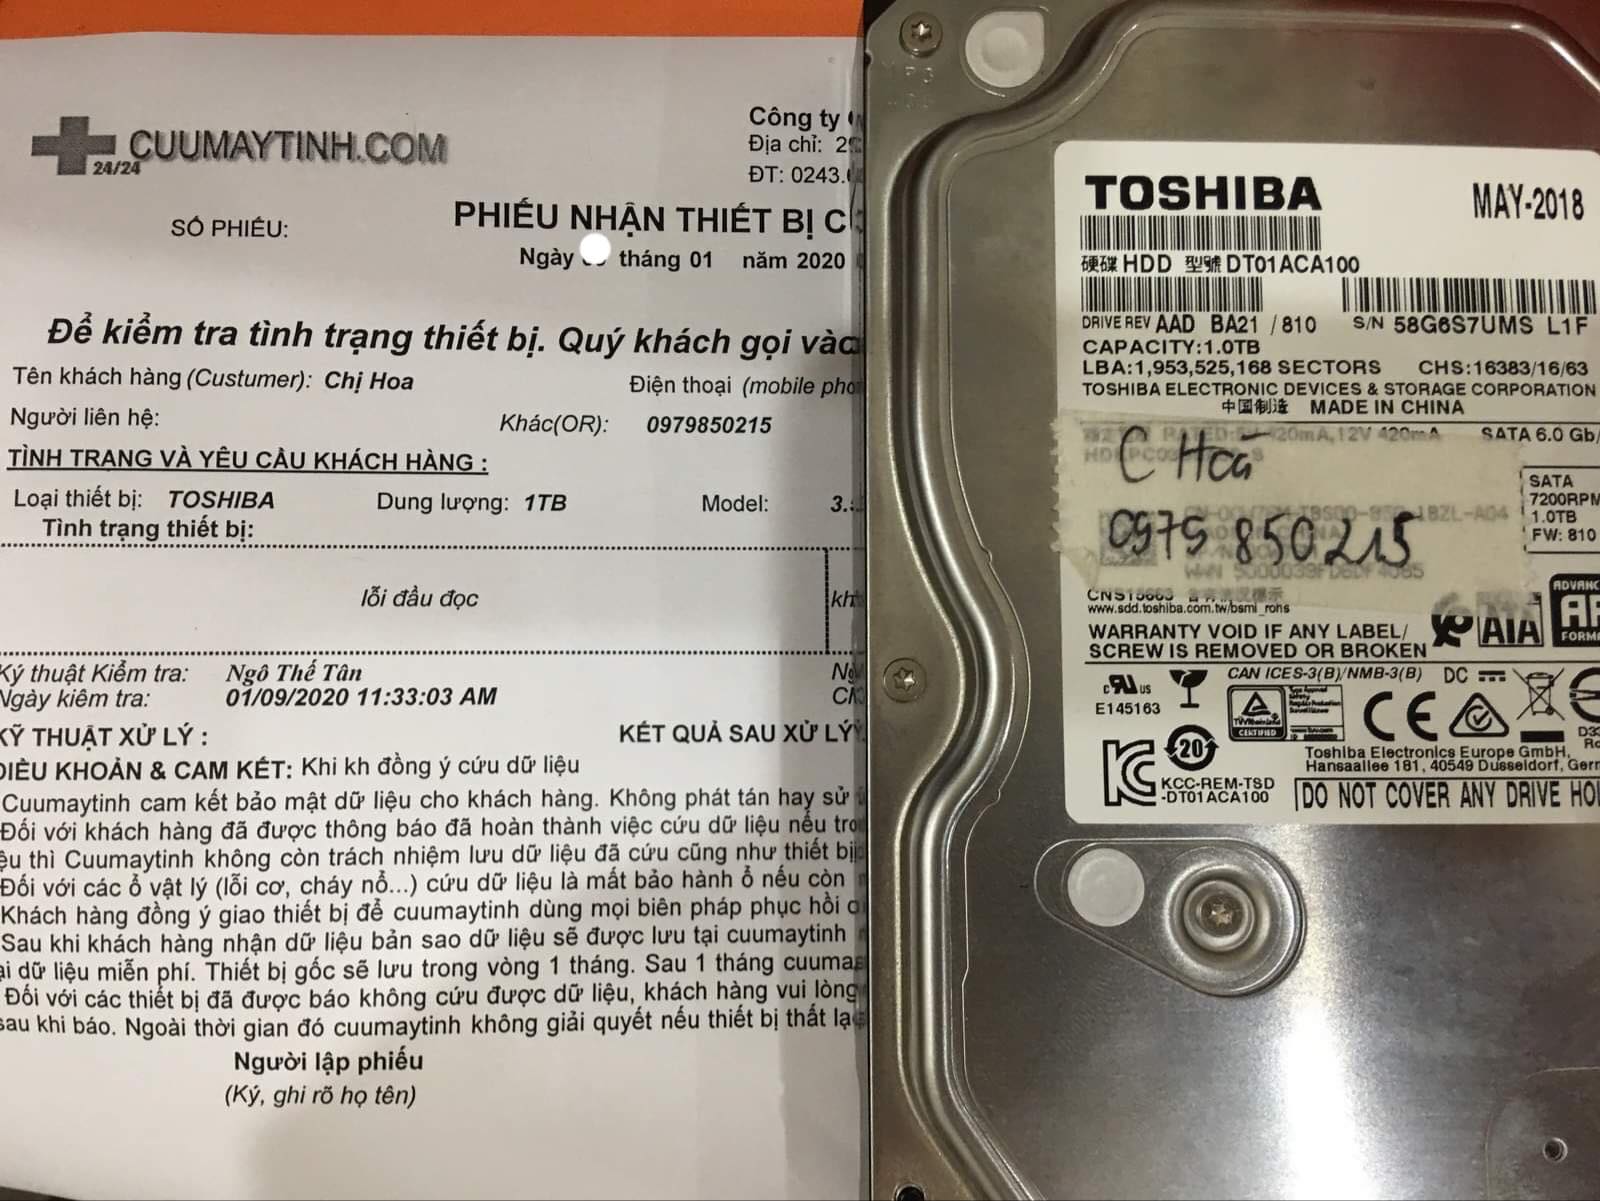 Cứu dữ liệu ổ cứng Toshiba 1TB lỗi đầu đọc 16/01/2020 - cuumaytinh